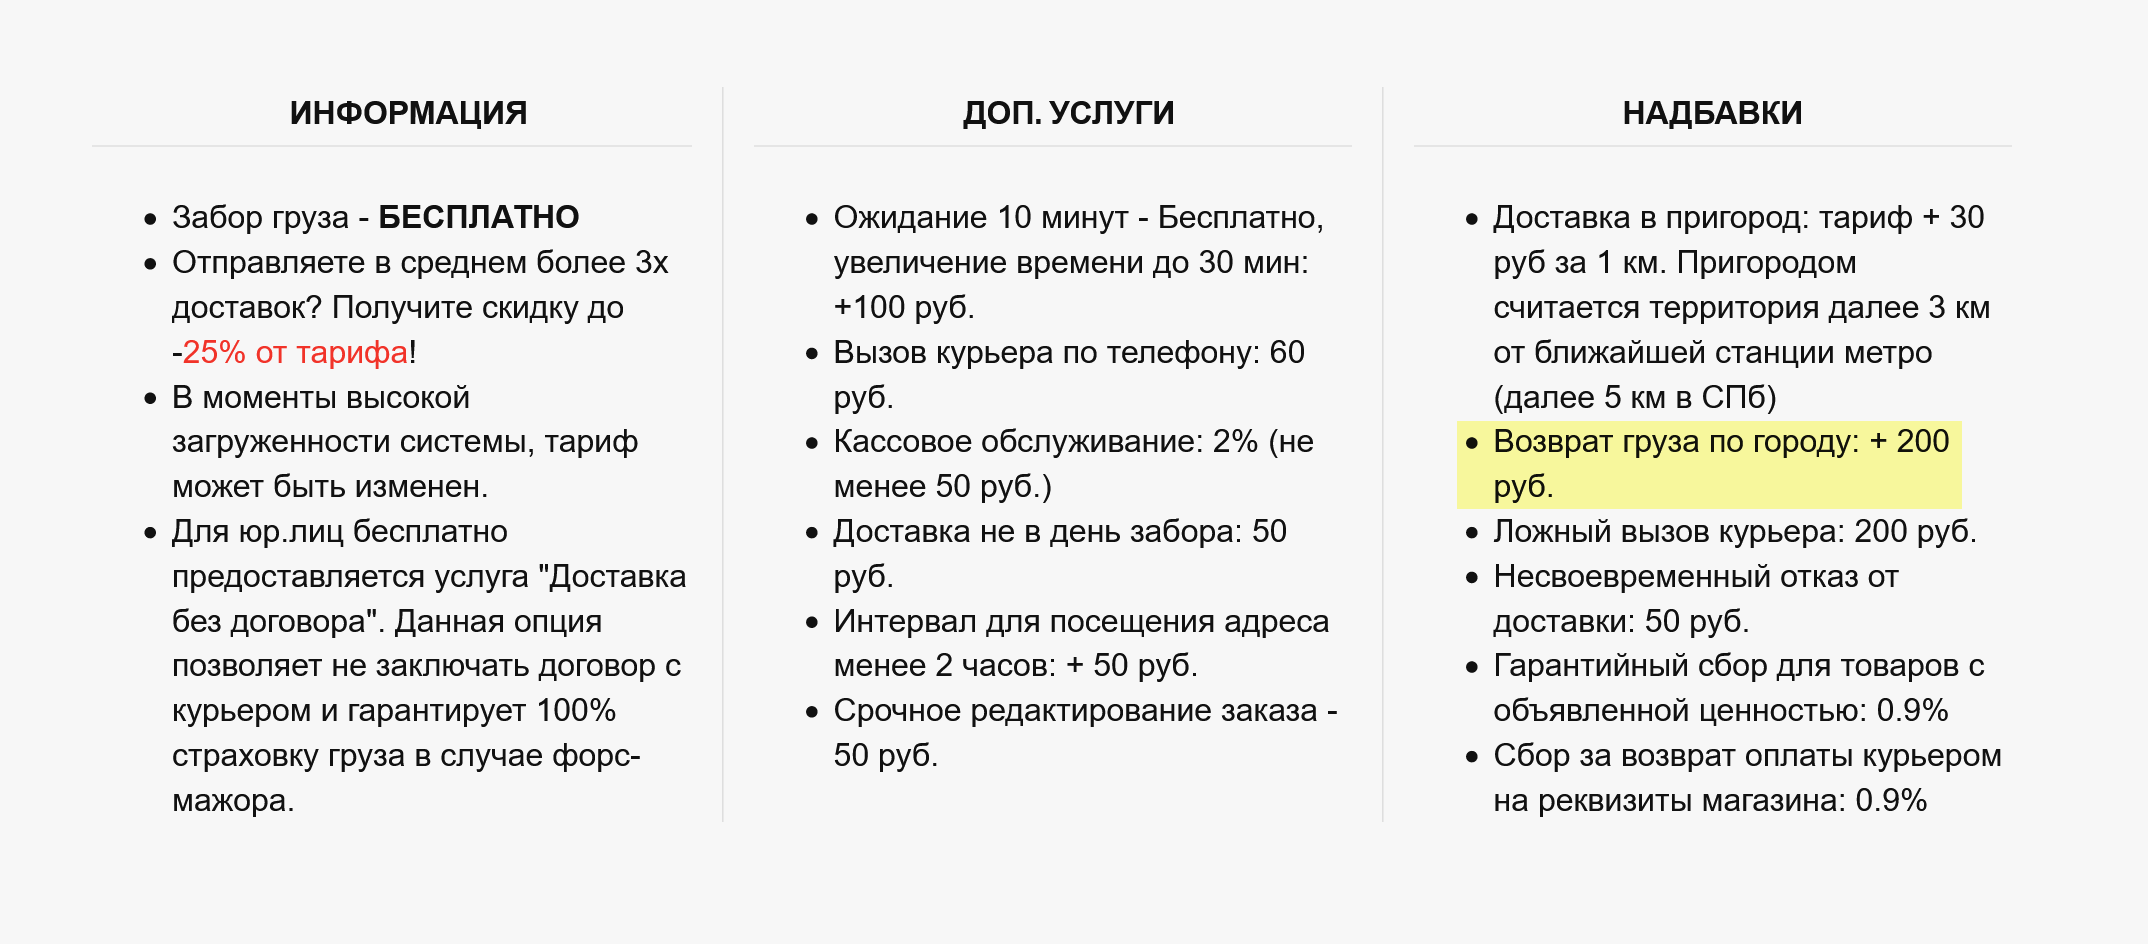 Сервис «Пешкарики» берет за возврат фиксированную плату. Возврат в пределах Москвы — 200 ₽